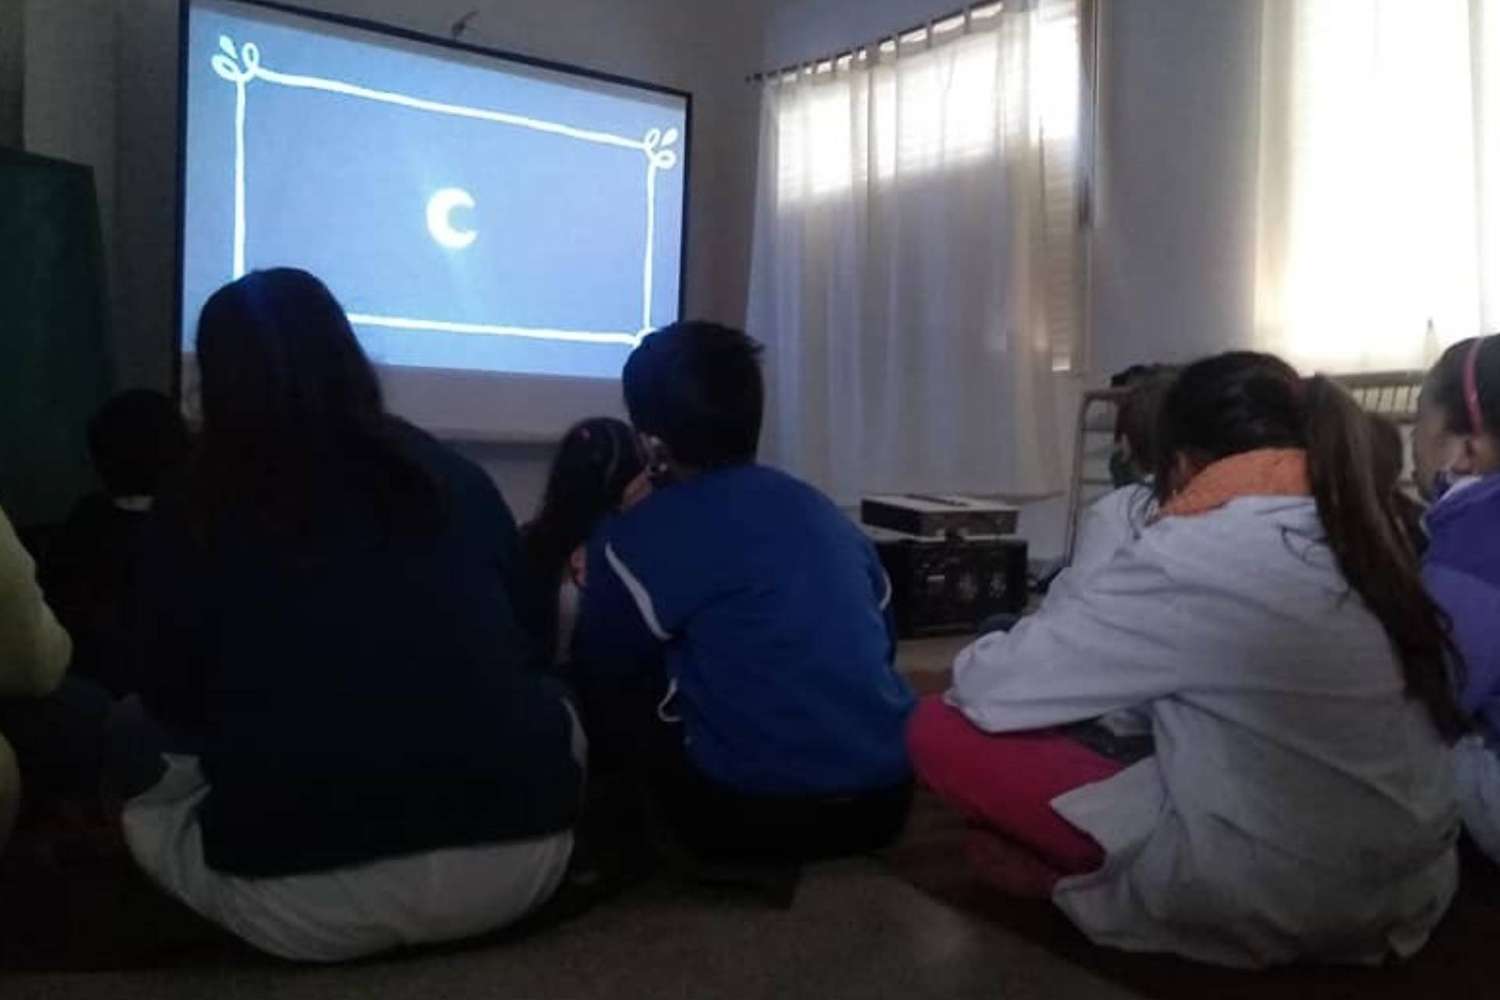 Comienza un ciclo de cine gratuito en escuelas de la provincia